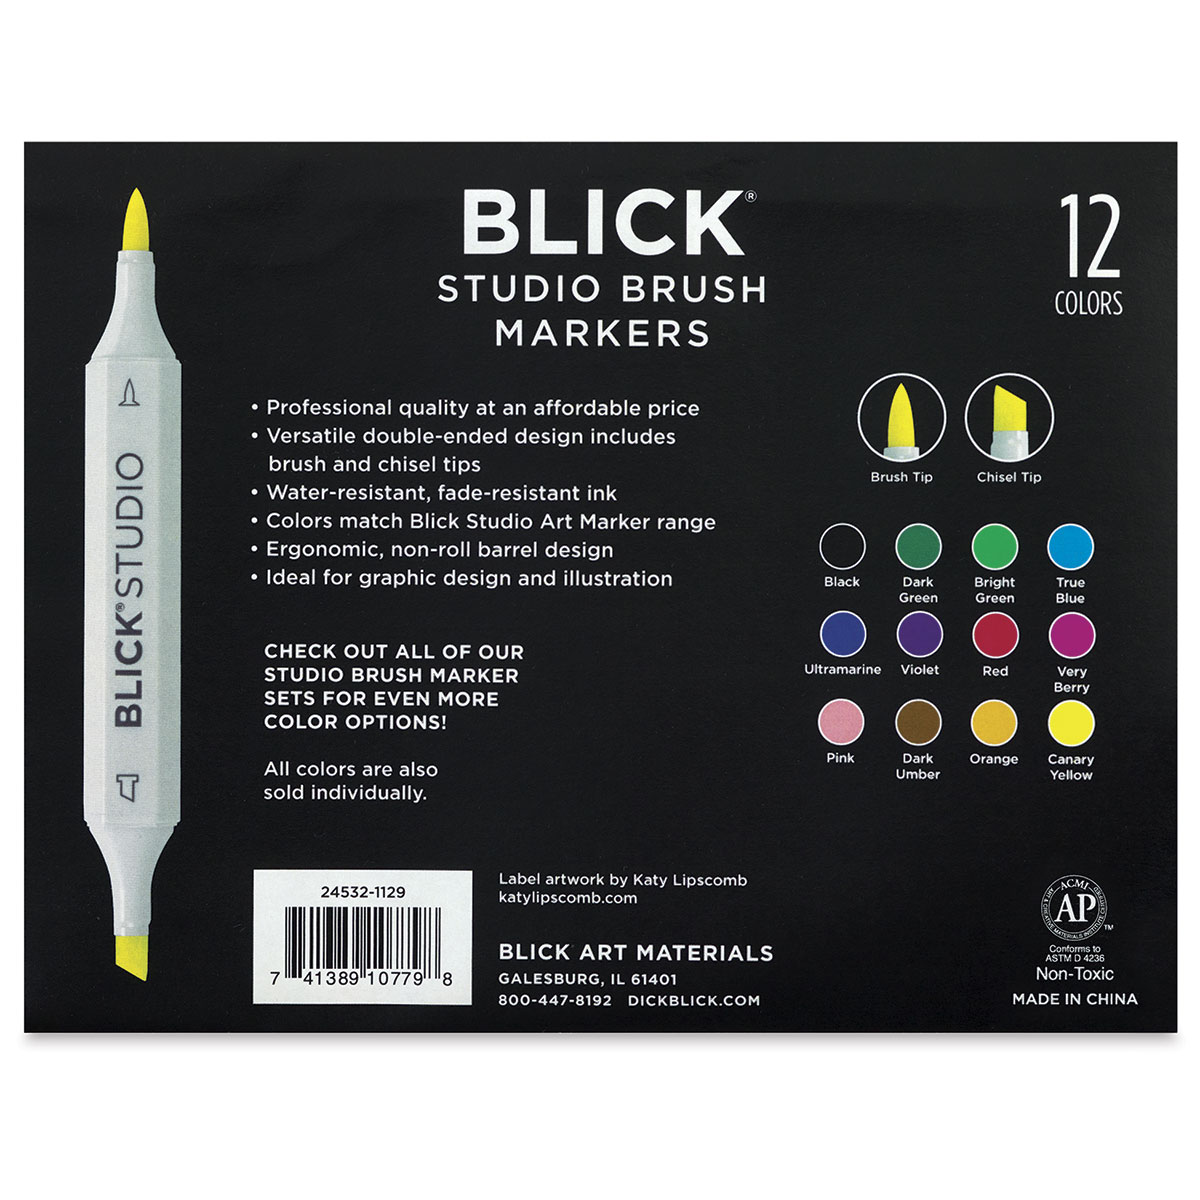 Blick Studio Brush Marker Filled Color Sheet by deure1 on DeviantArt